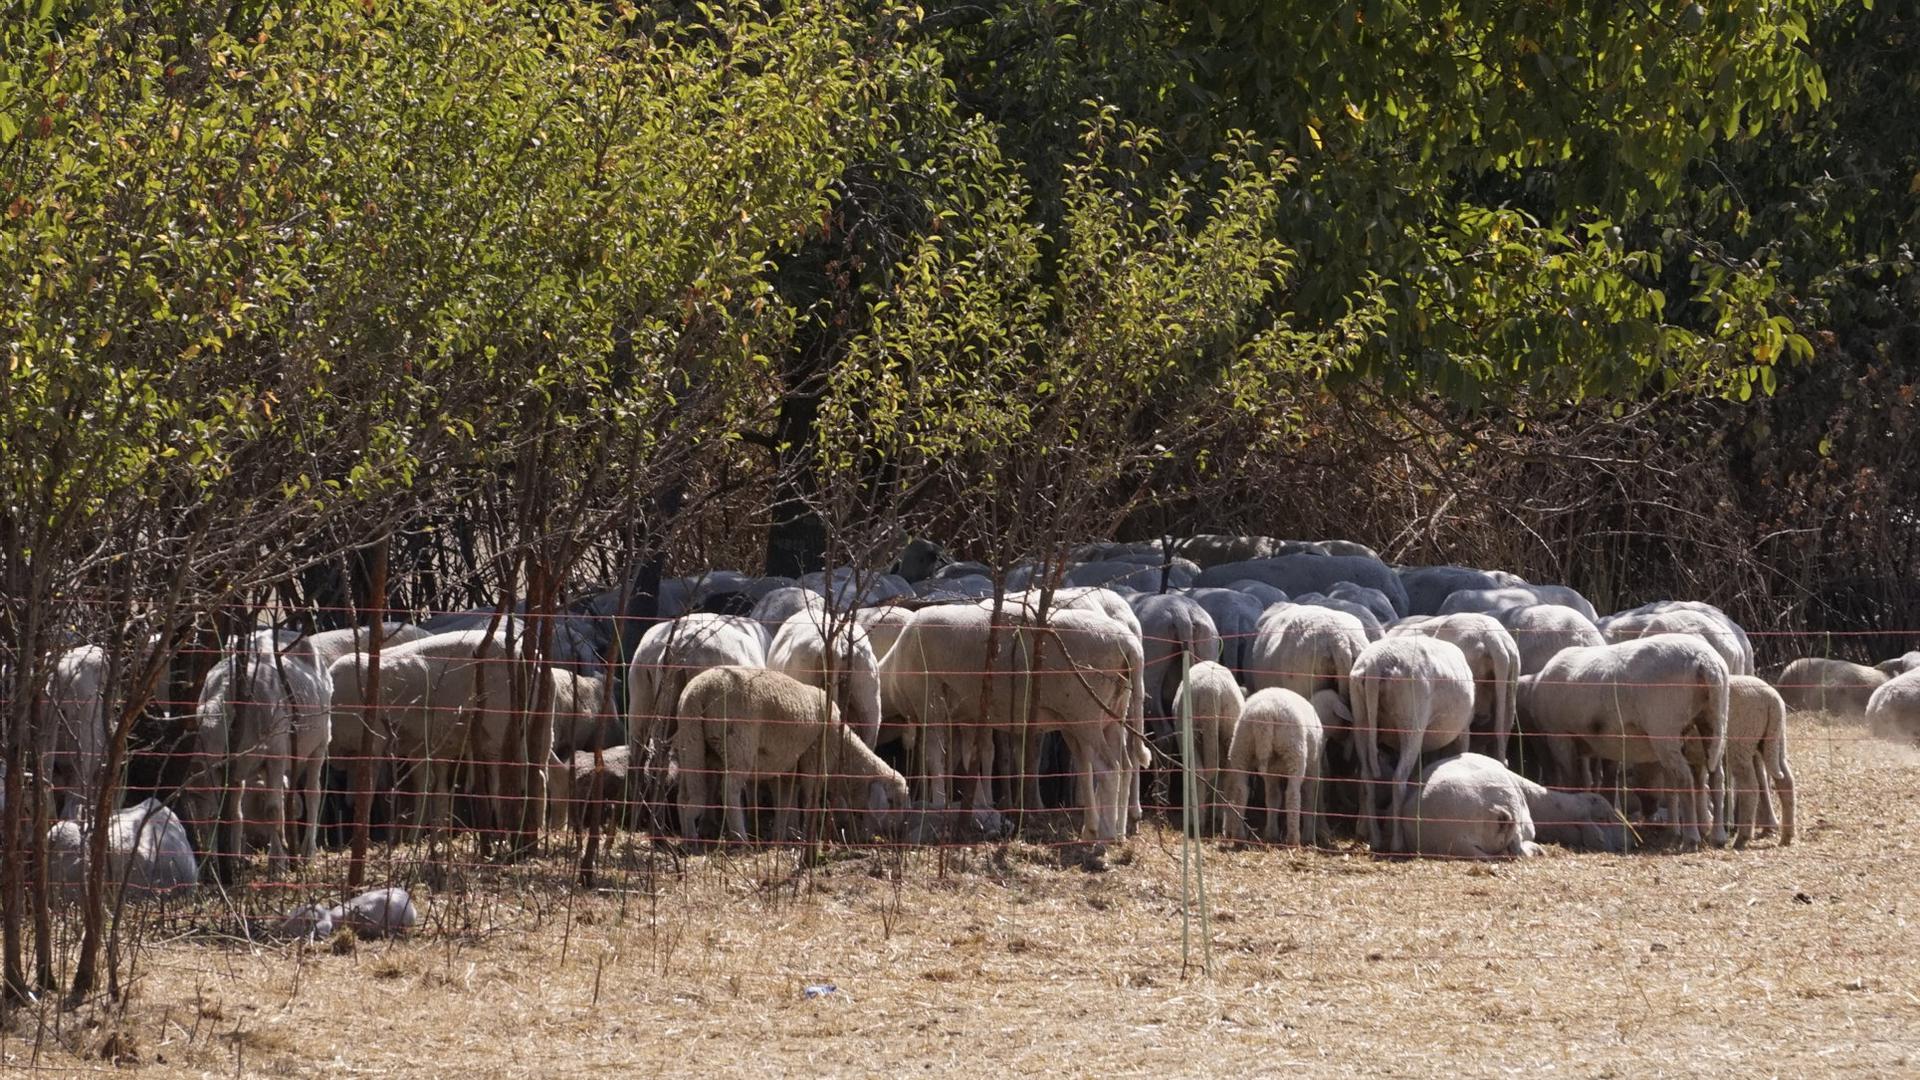      Karge Bedingungen: Die Polizei untersucht, ob der Schäfer bei der Bietigheimer Herde gegen das Tierschutzgesetz verstoßen hat.  Foto: Frank Vetter                